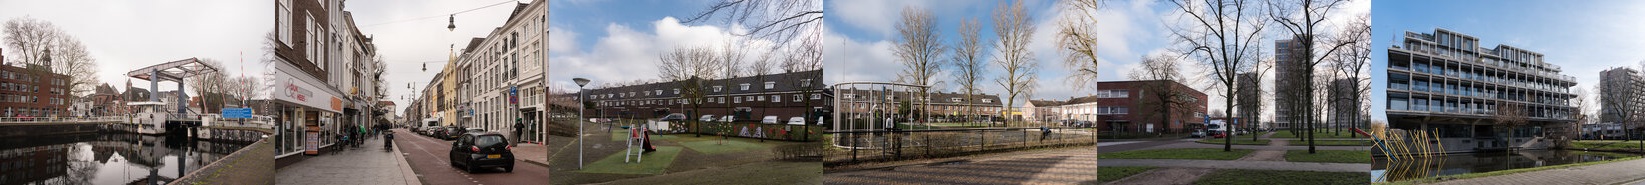 Een collage van fotos met verschillende gebieden in 's-Hertogenbosch